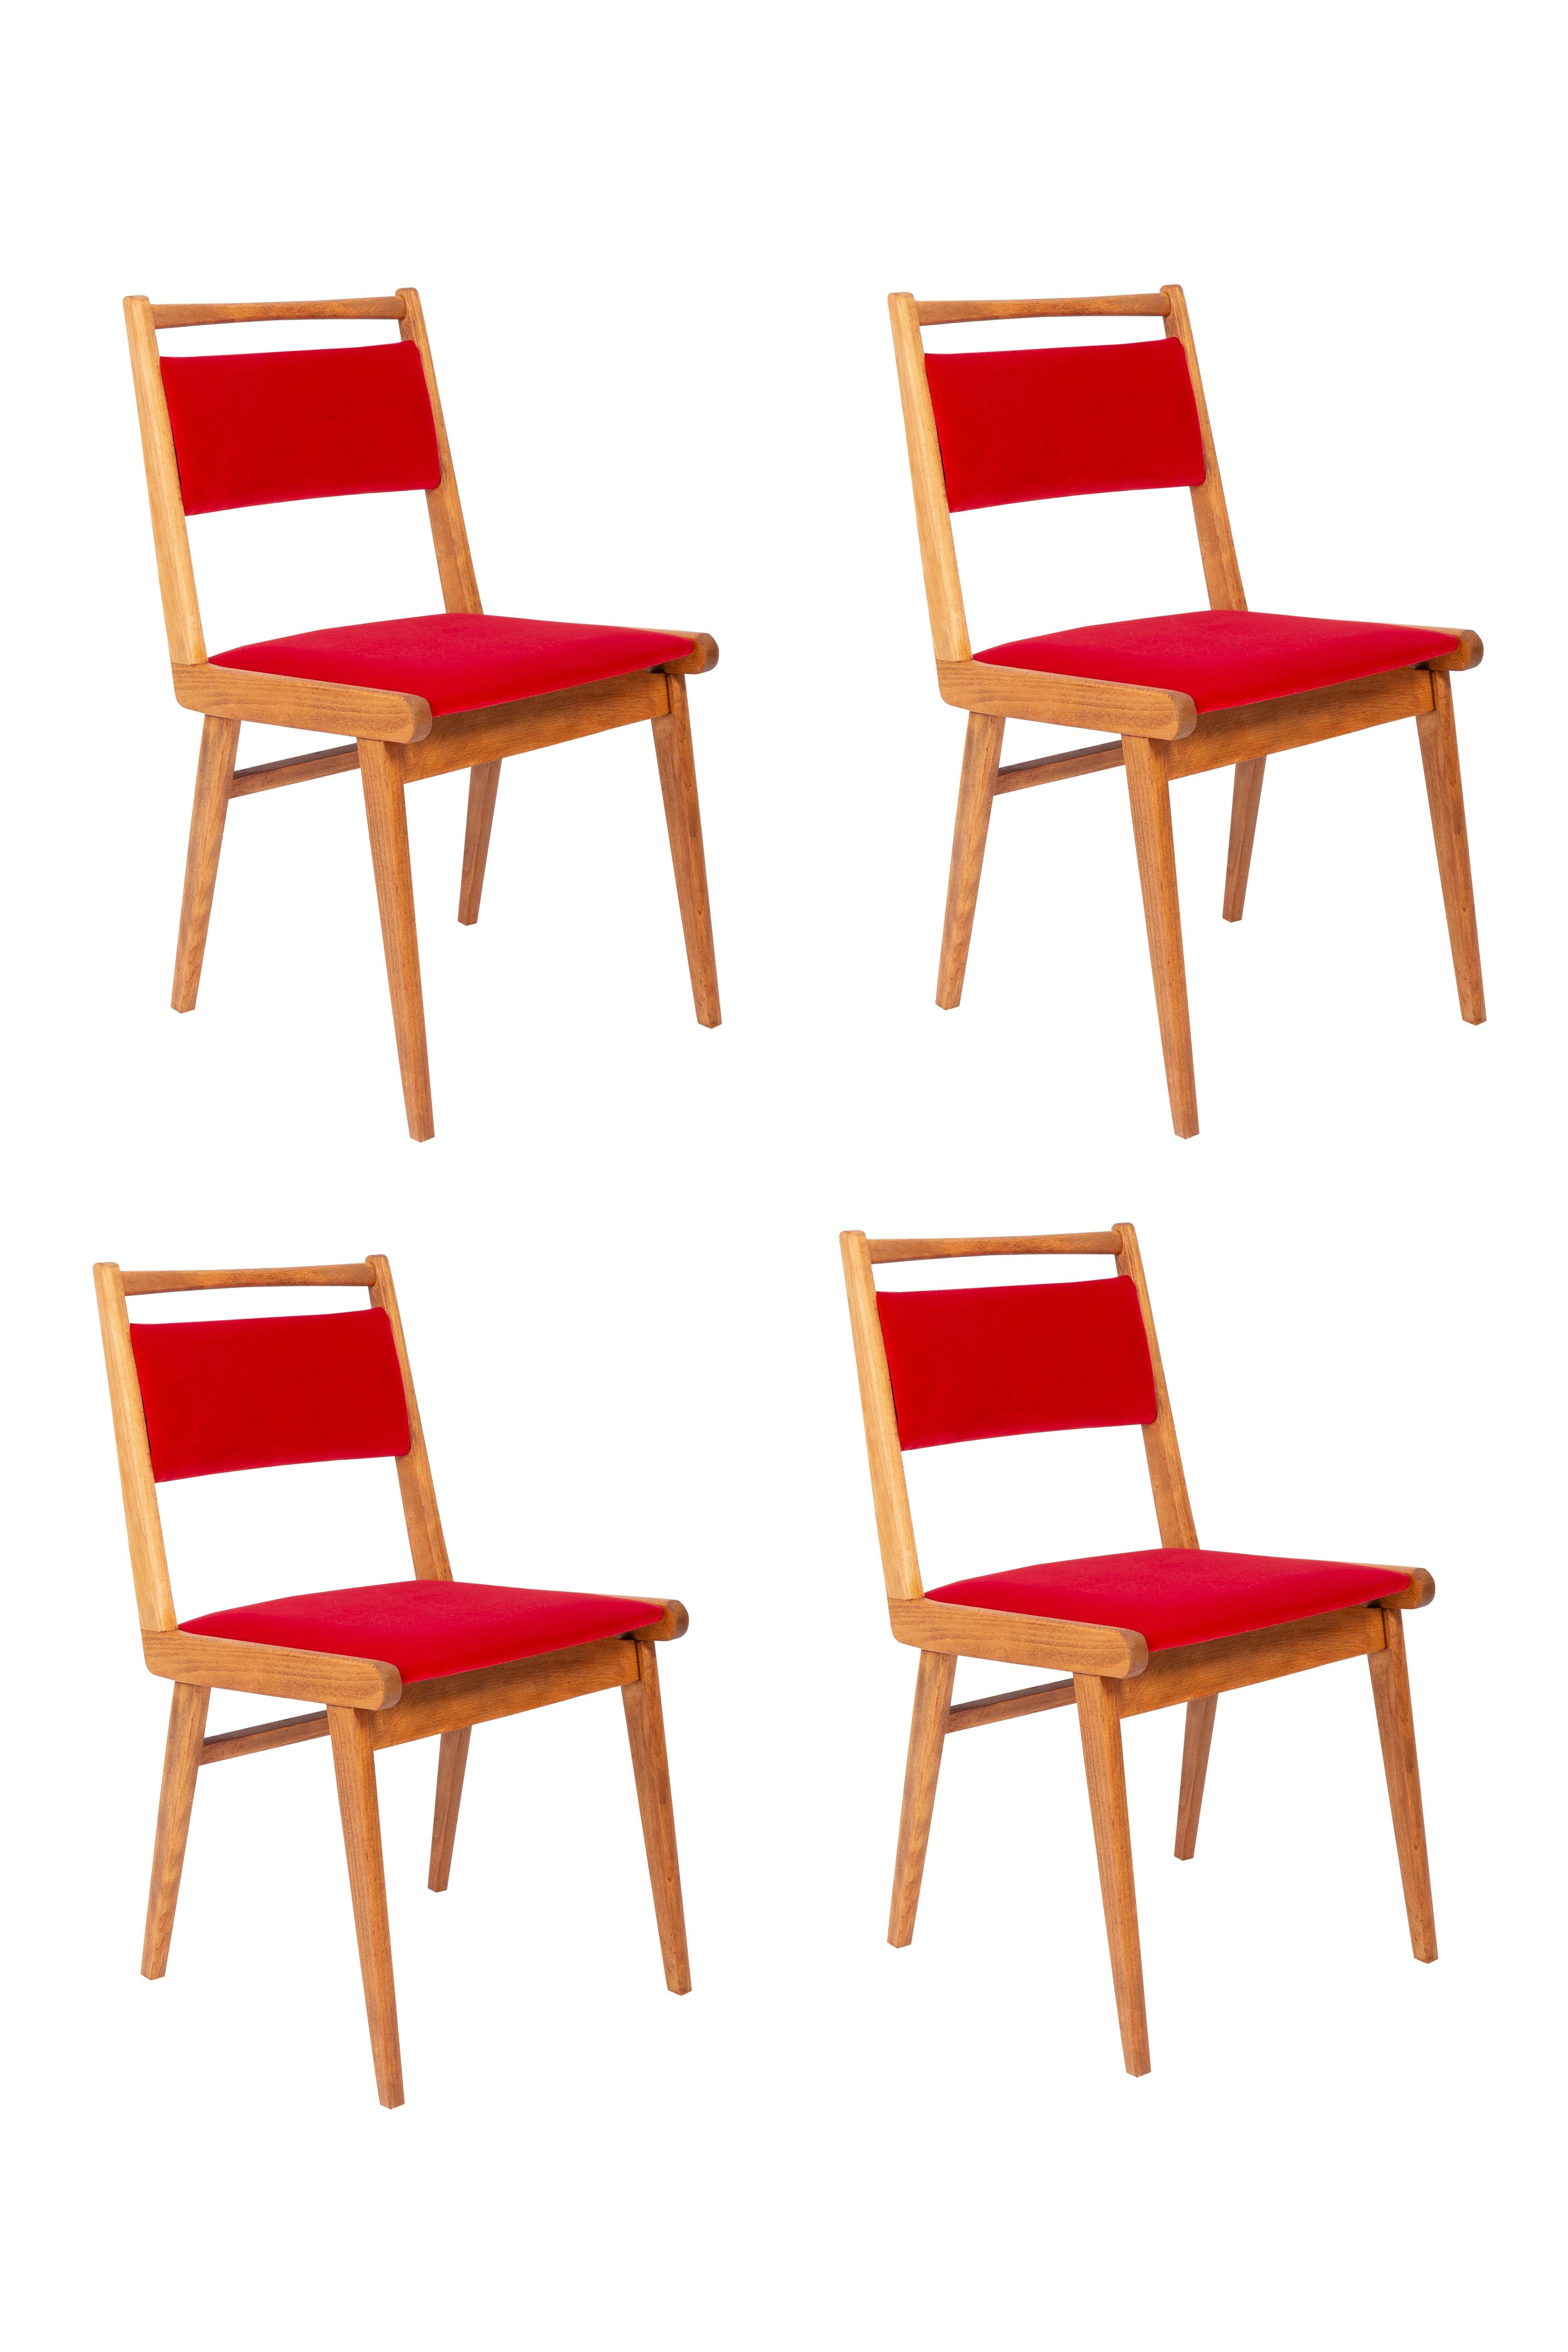 Stühle entworfen von Prof. Rajmund Halas. Es handelt sich um ein Modell vom Typ JAR. Hergestellt aus Buchenholz. Die Stühle sind komplett neu gepolstert, die Holzarbeiten wurden aufgefrischt. Sitz und Rückenlehne sind mit rotem, strapazierfähigem